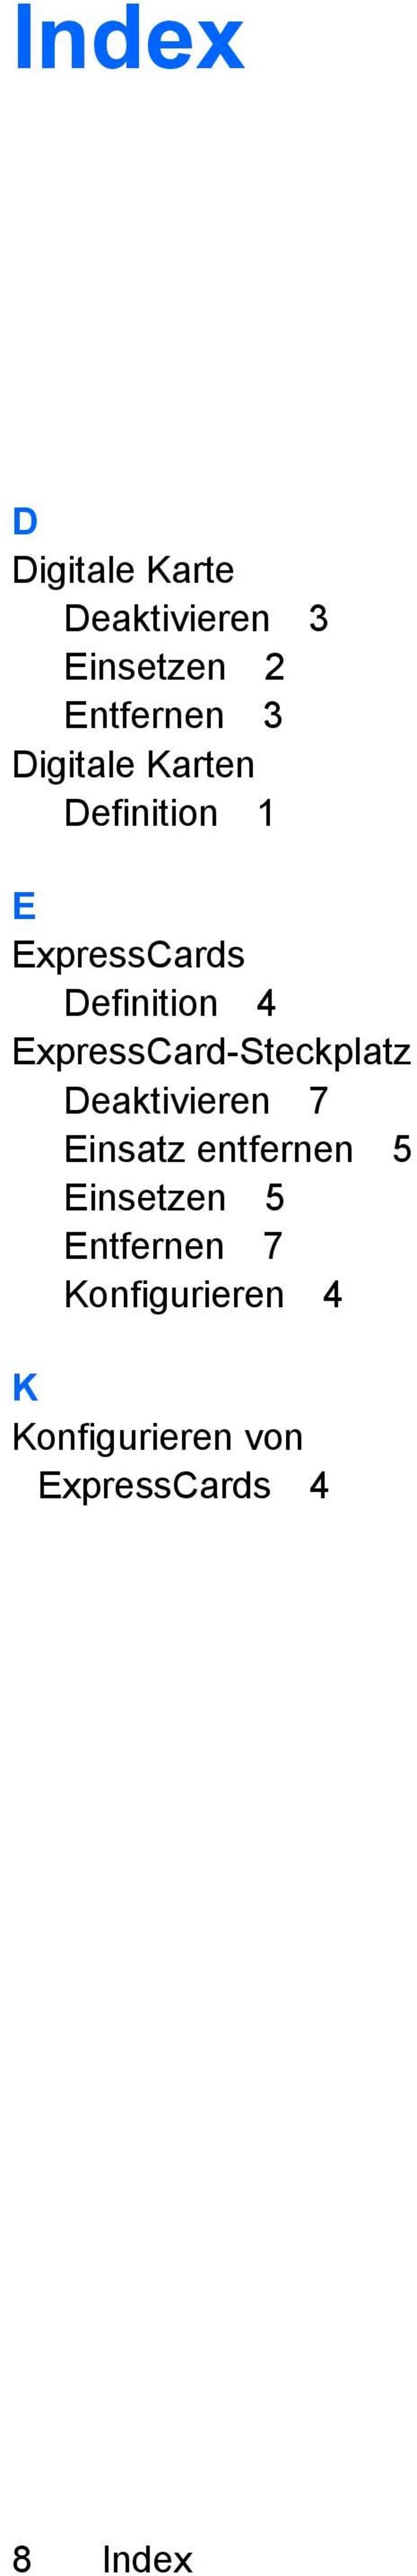 ExpressCard-Steckplatz Deaktivieren 7 Einsatz entfernen 5